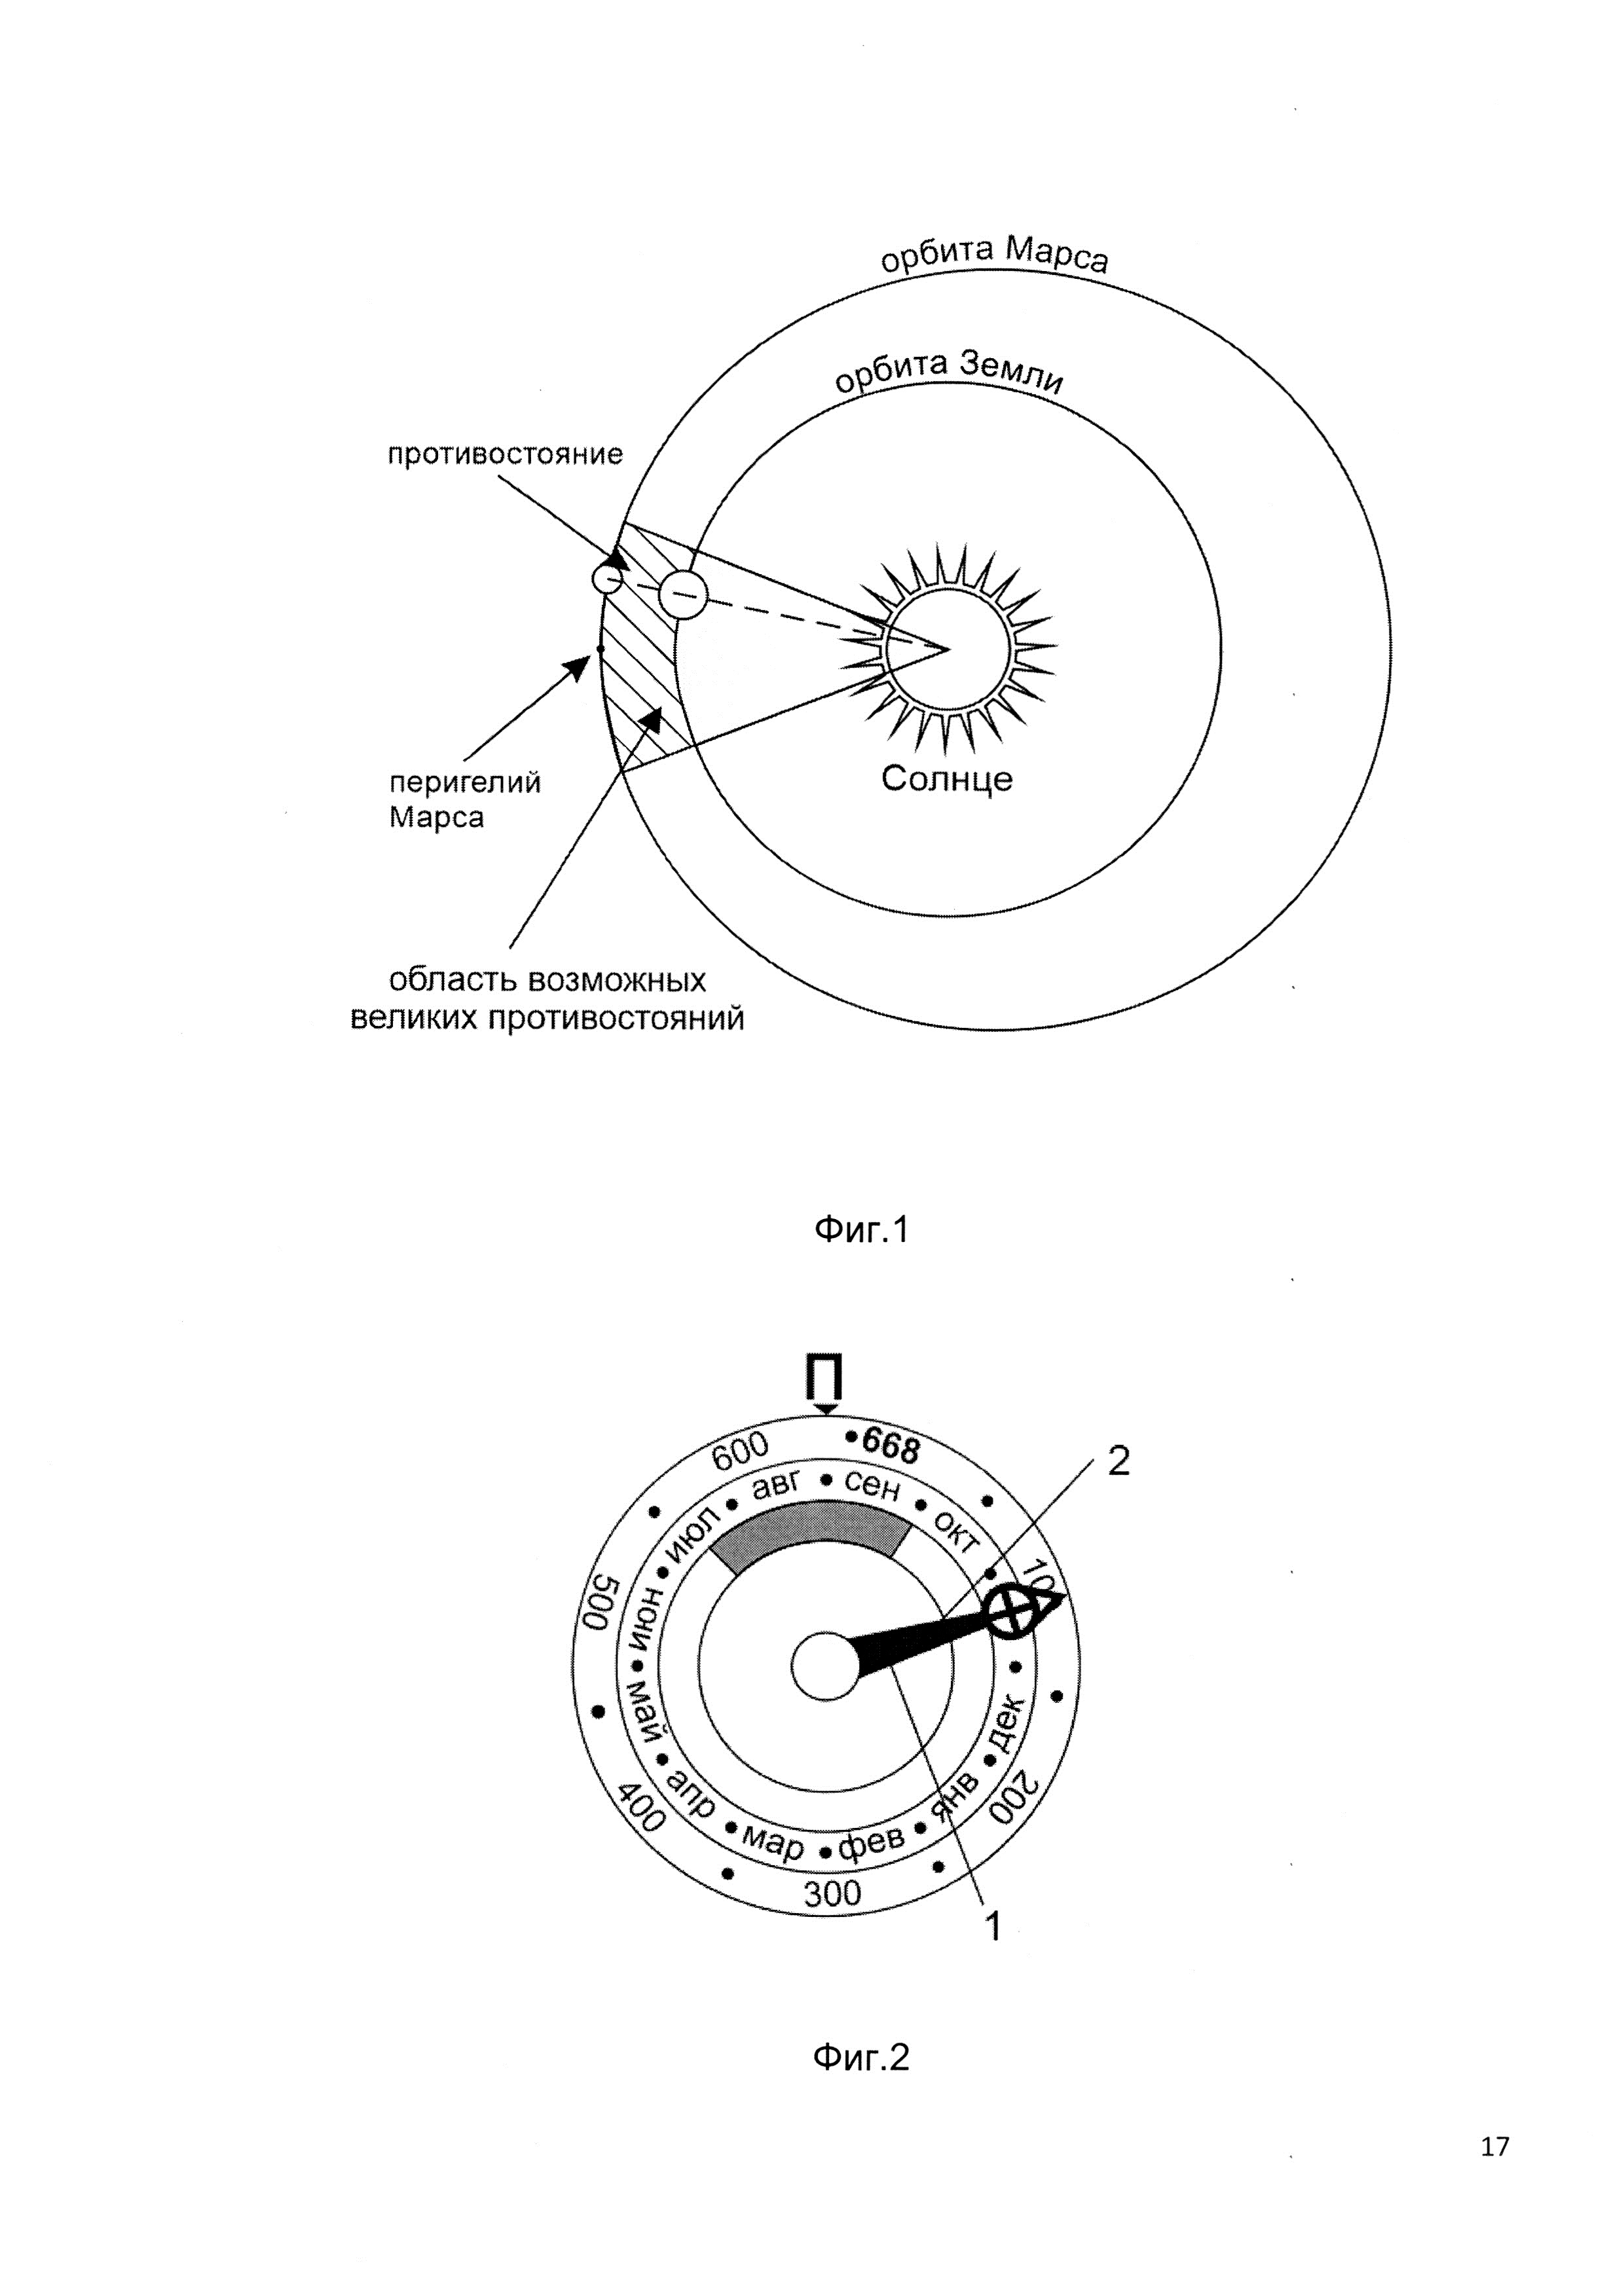 Прибор времени с многофункциональным механизмом индикации циклов противостояния Земли и Марса